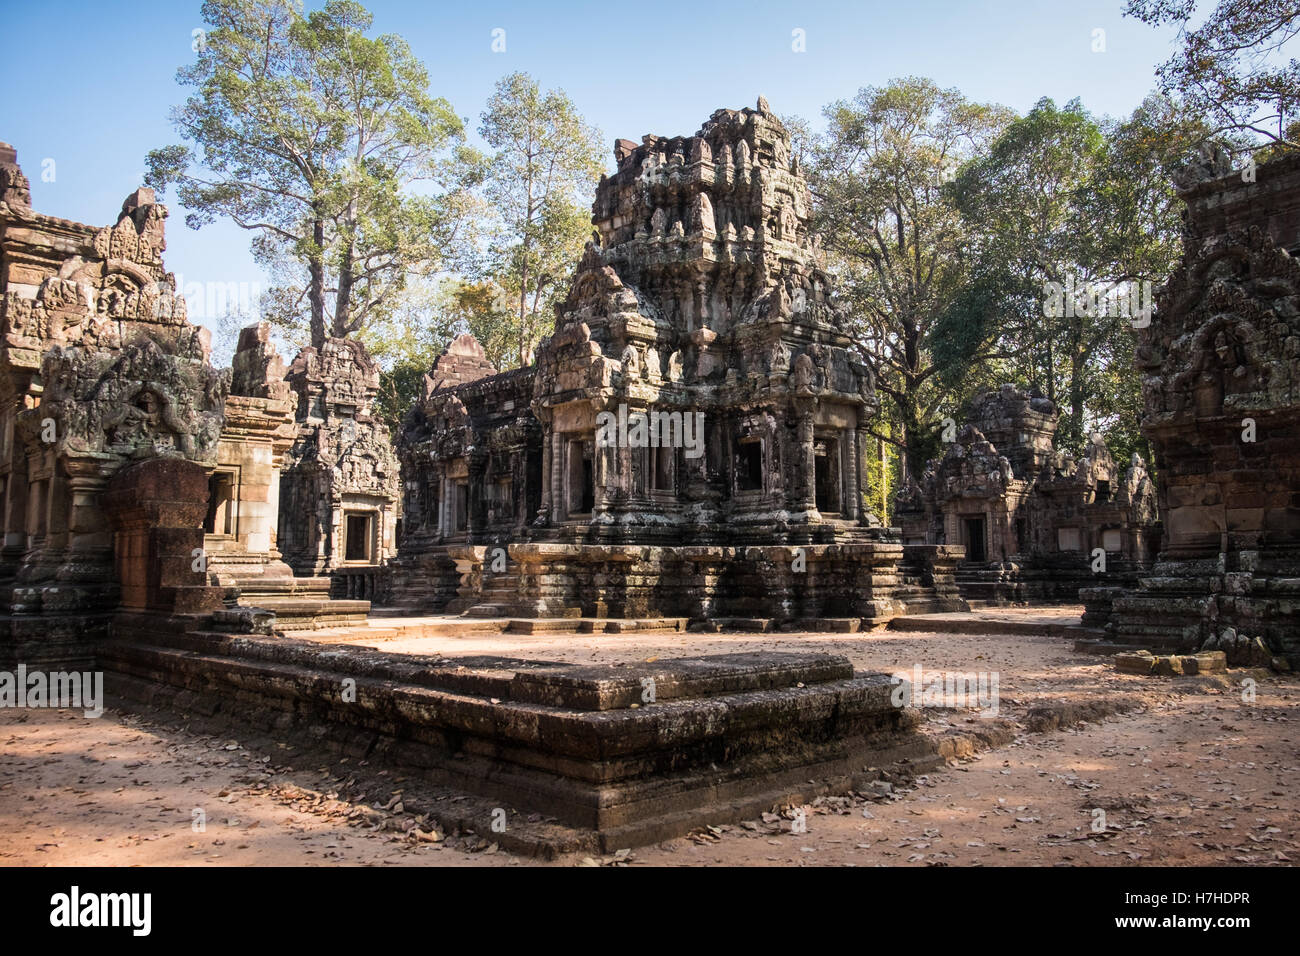 Una vista general de Chau decir templo en la zona de Siem Reap, Camboya Foto de stock